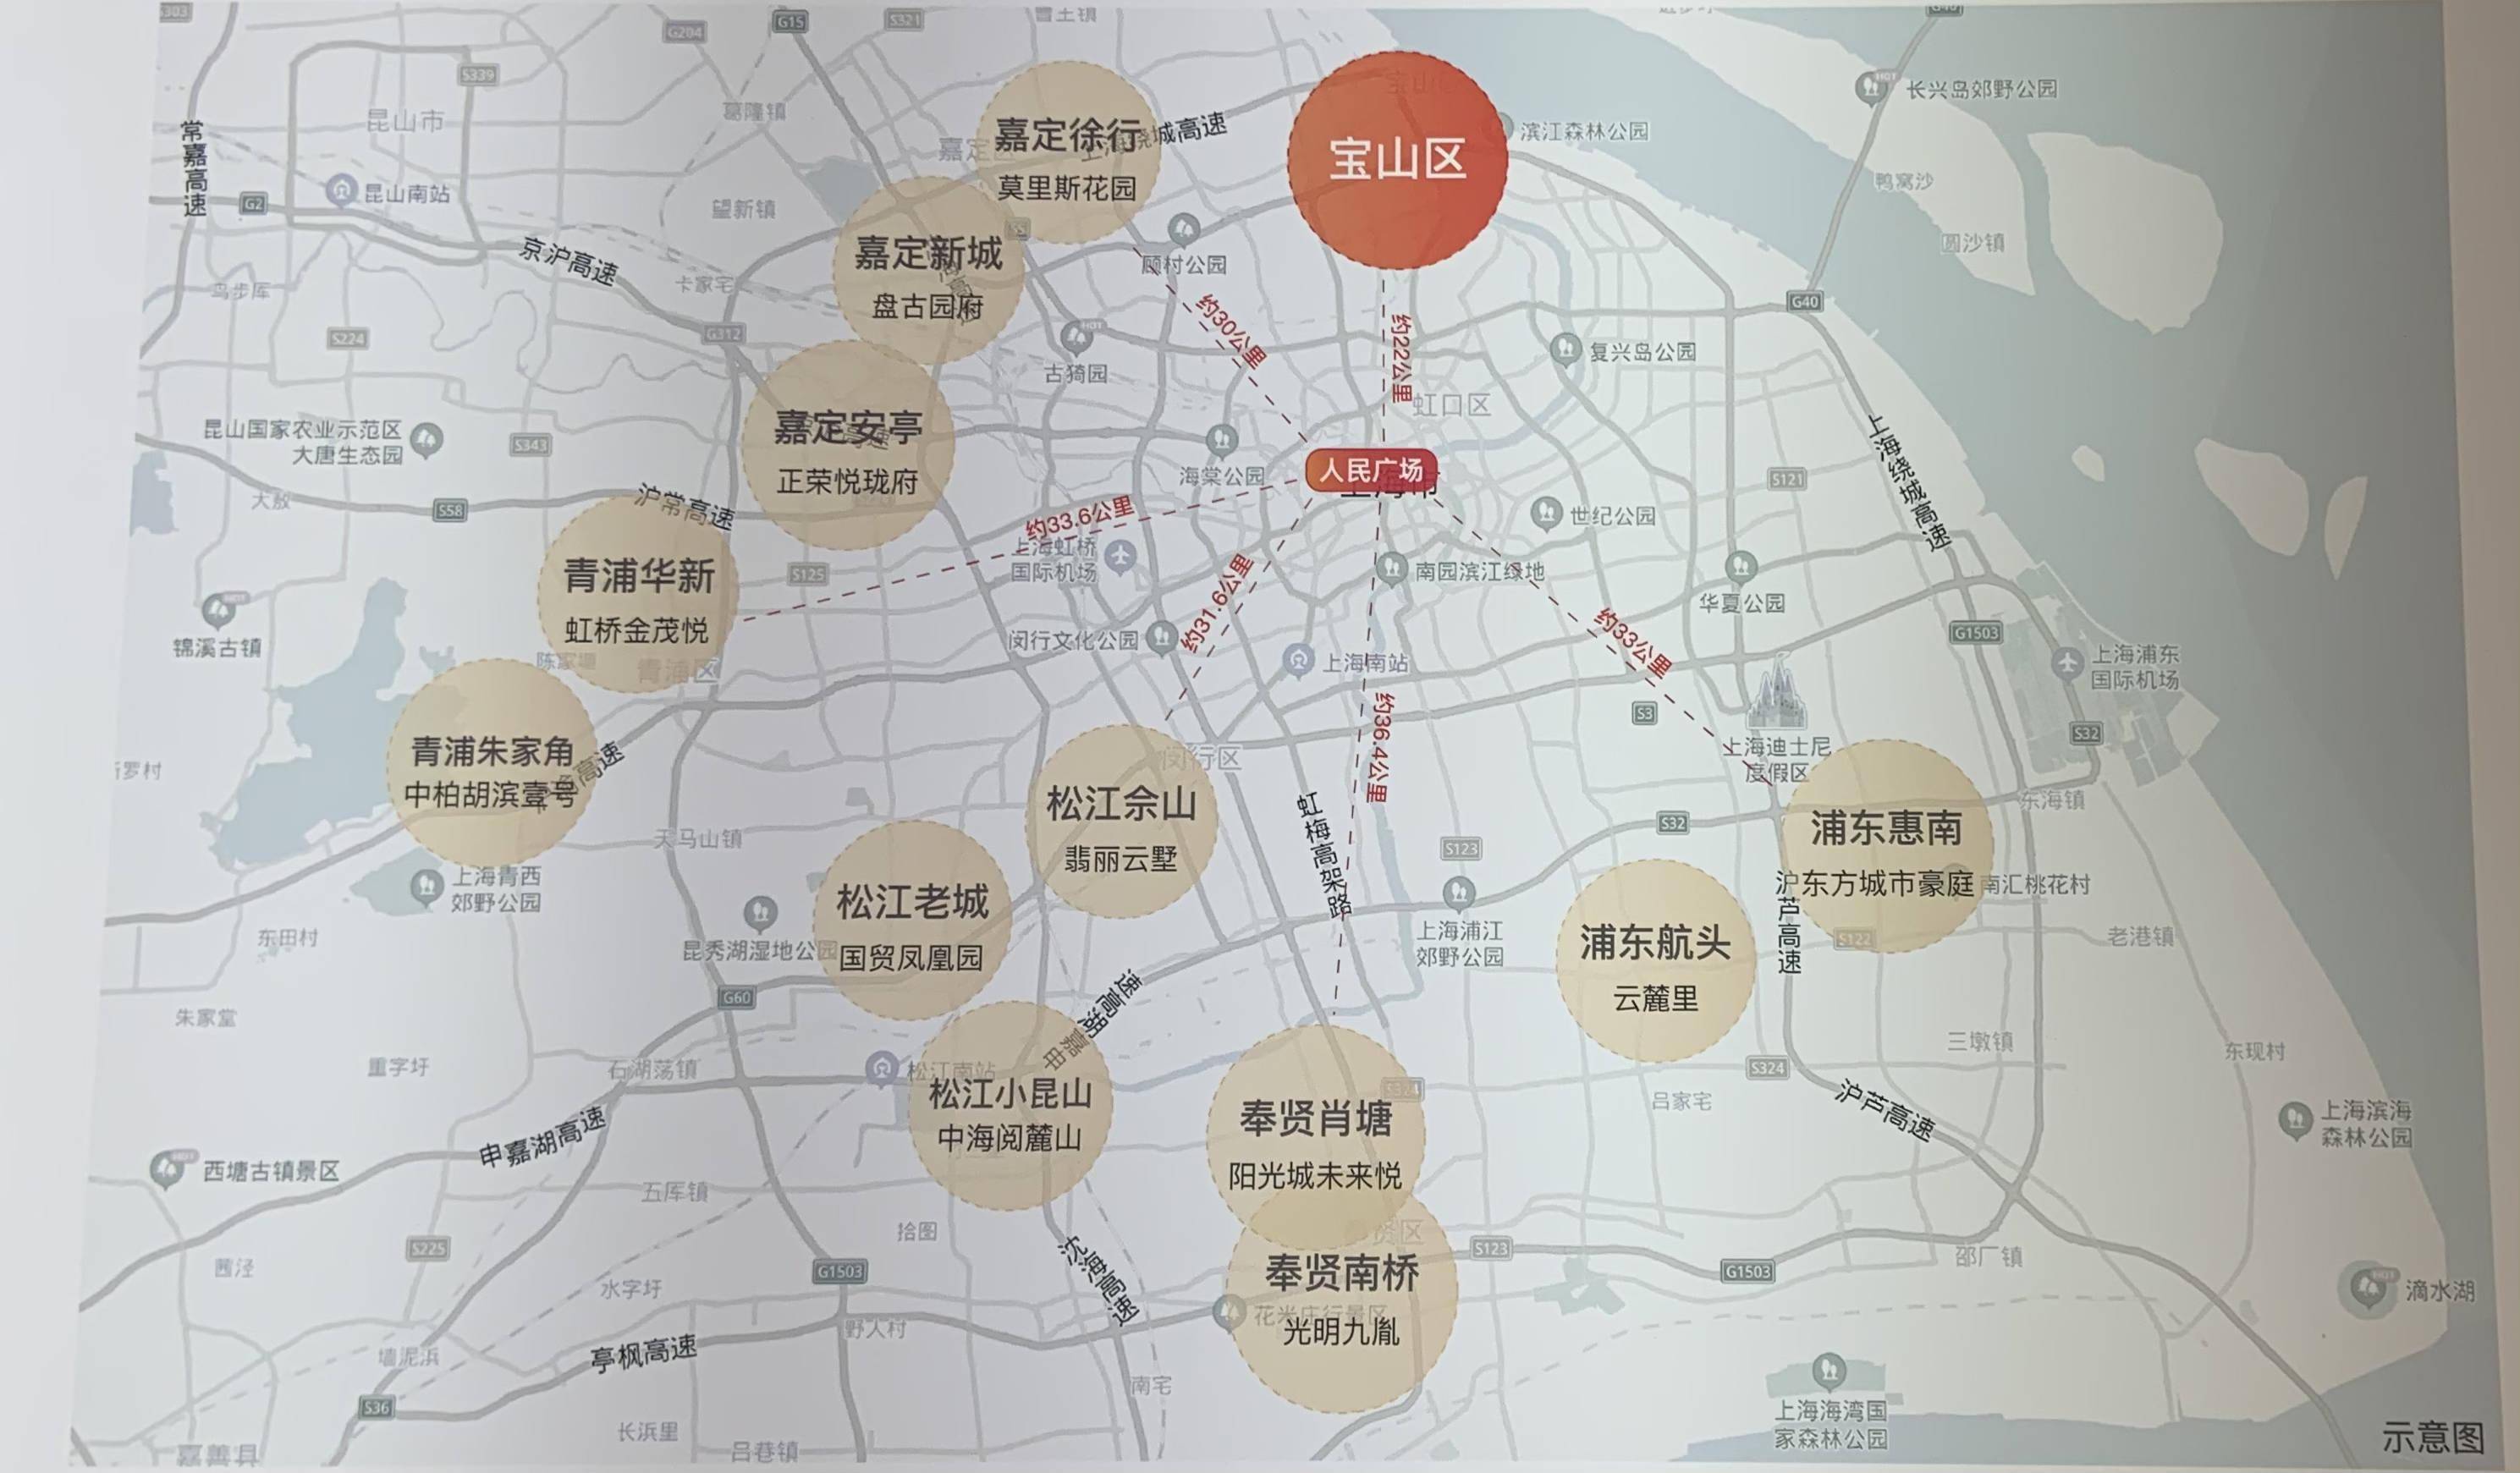 《上海市城市总体规划(2017-2035年)》划入主城区统一管理的宝山区